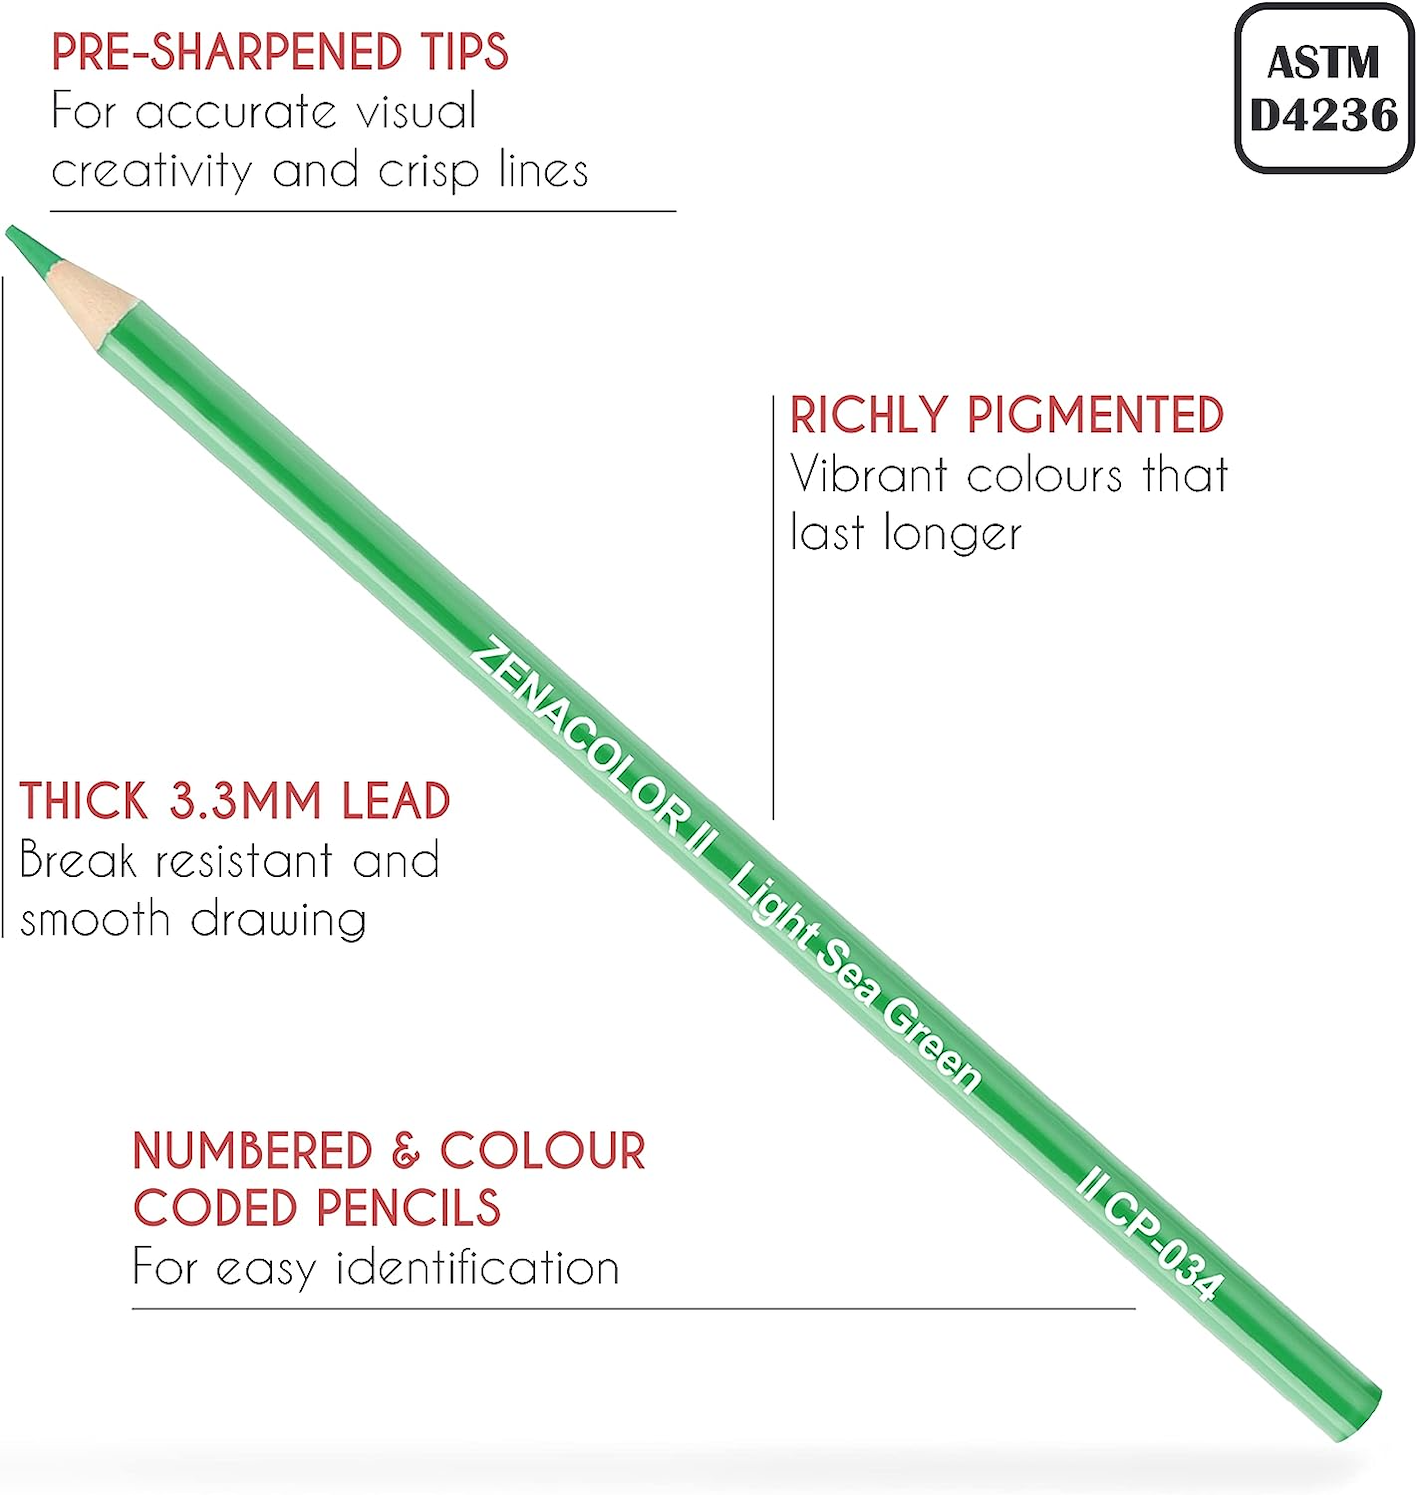 Zenacolor - 160 Crayon de Couleurs Professionnel, avec Boîte de Rangement -  Set de 160 Couleurs Uniques - Dessin, Esquisse, Coloration - Crayons de  Couleur pour Adultes et Enfants : : Fournitures de bureau